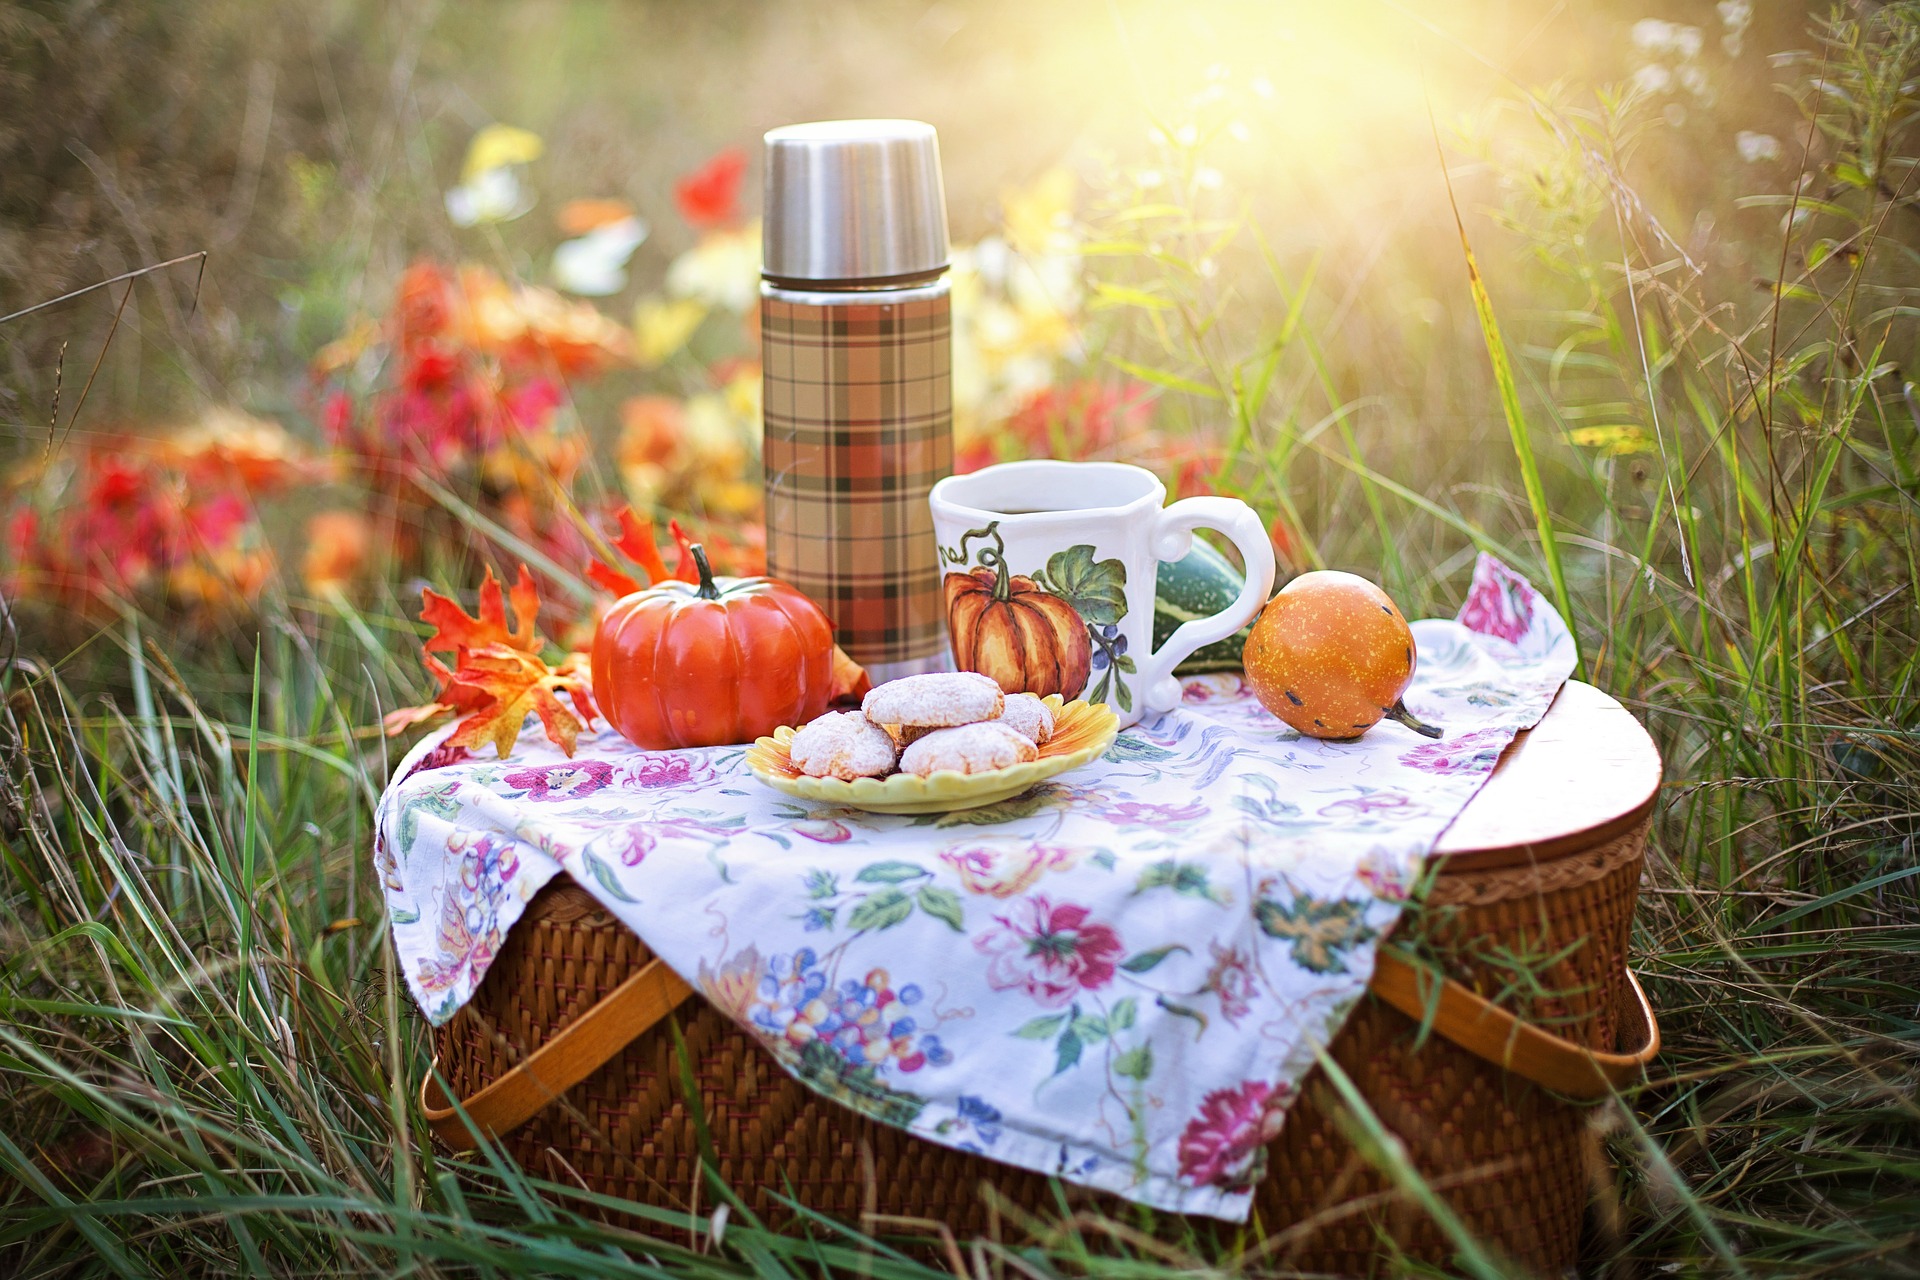 Picknick- Bild von Jill Wellington auf Pixabay